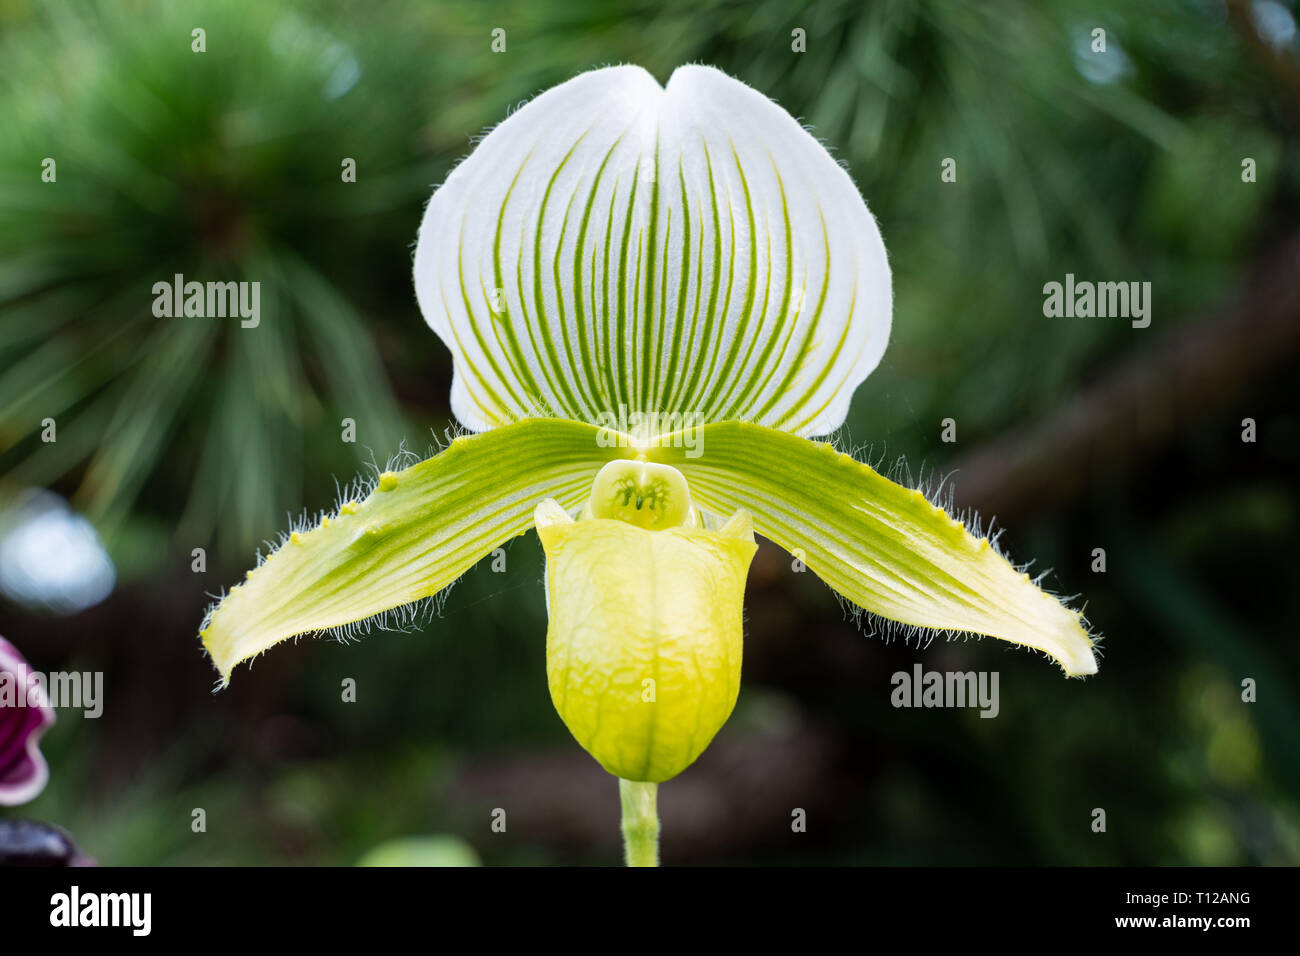 Pianella della Madonna, lady pantofola o pantofola orchid Paphiopedilum. Close-up foto di splendidi fiori in natura Foto Stock